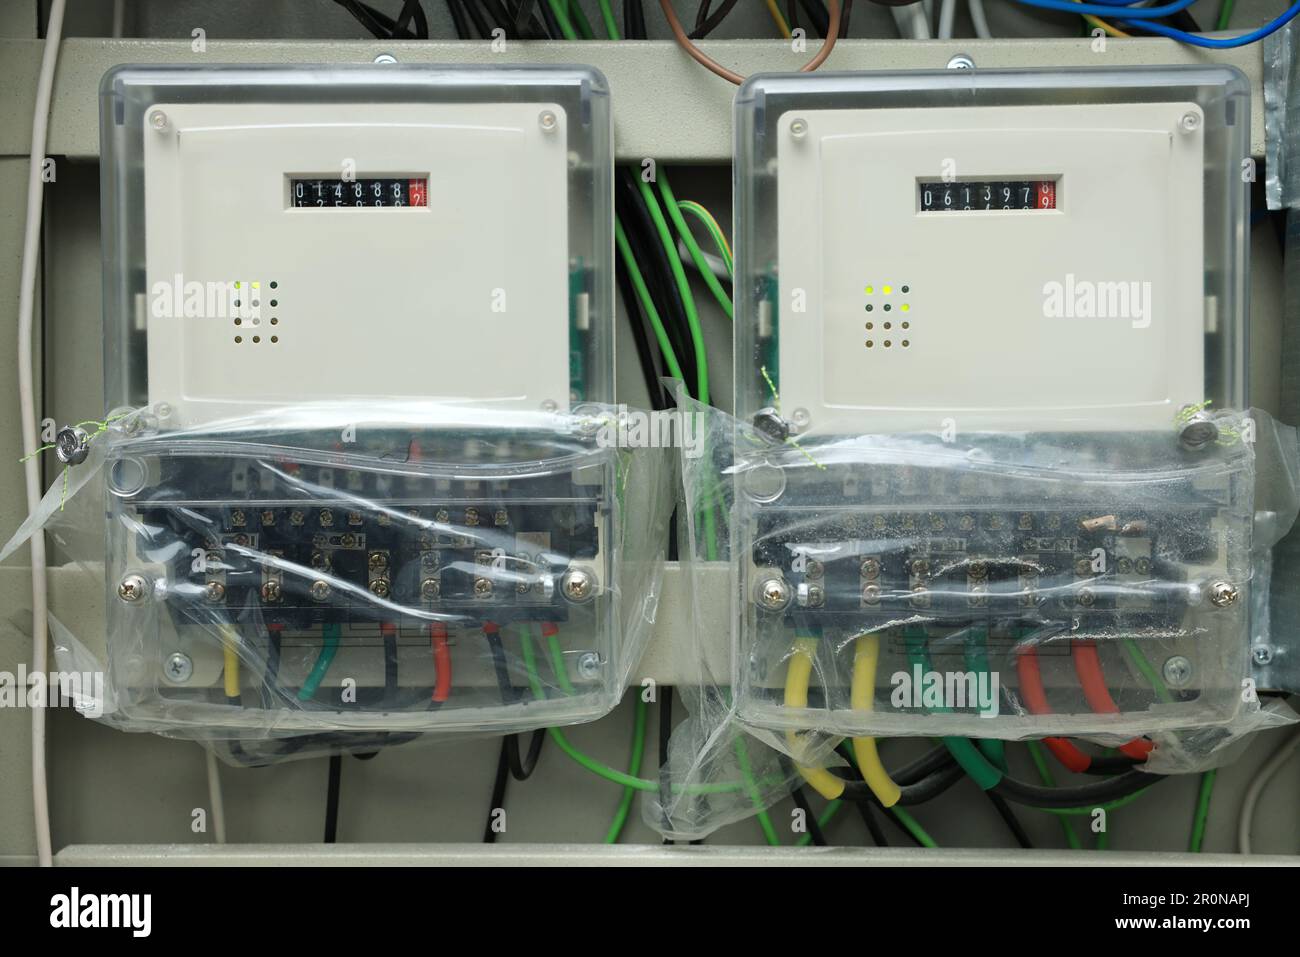 Sicherungskasten mit vielen Kabeln Stockfotografie - Alamy